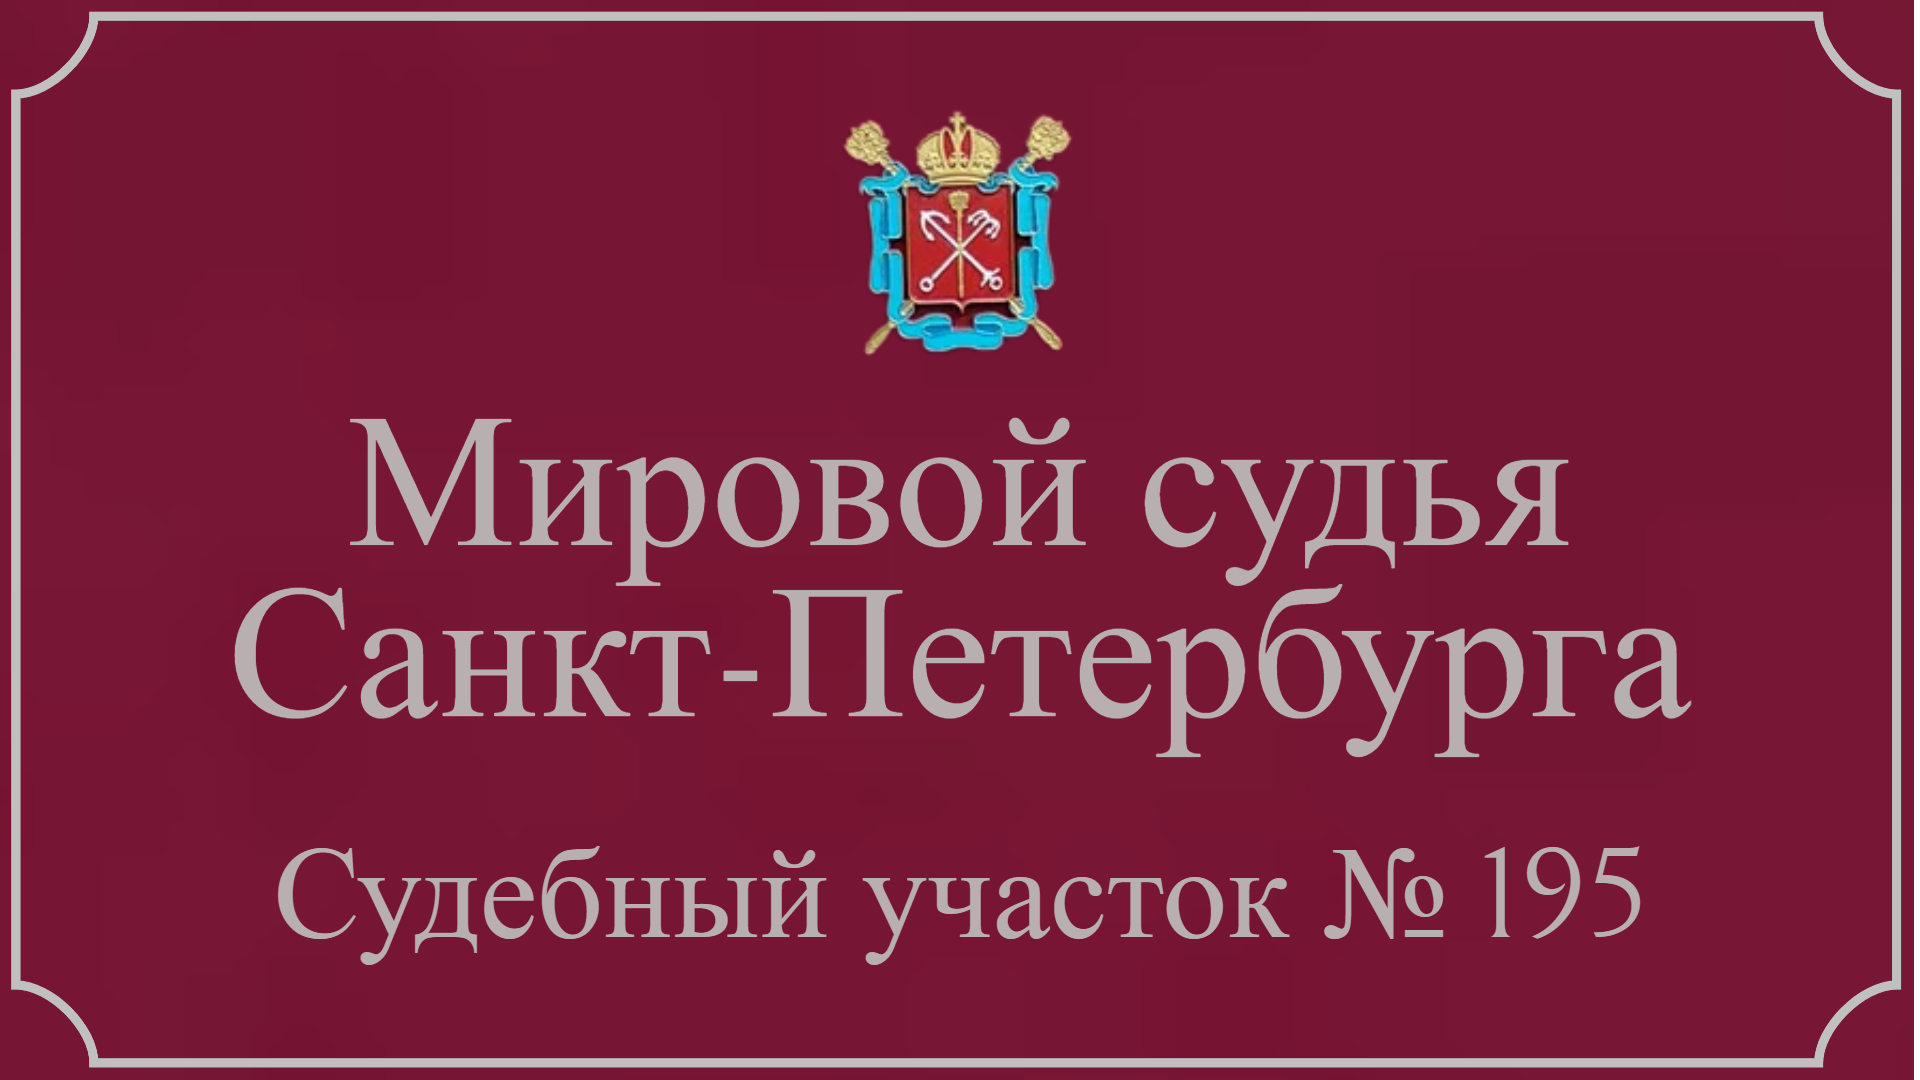 Информация по 195 судебному участку в Санкт-Петербурге.